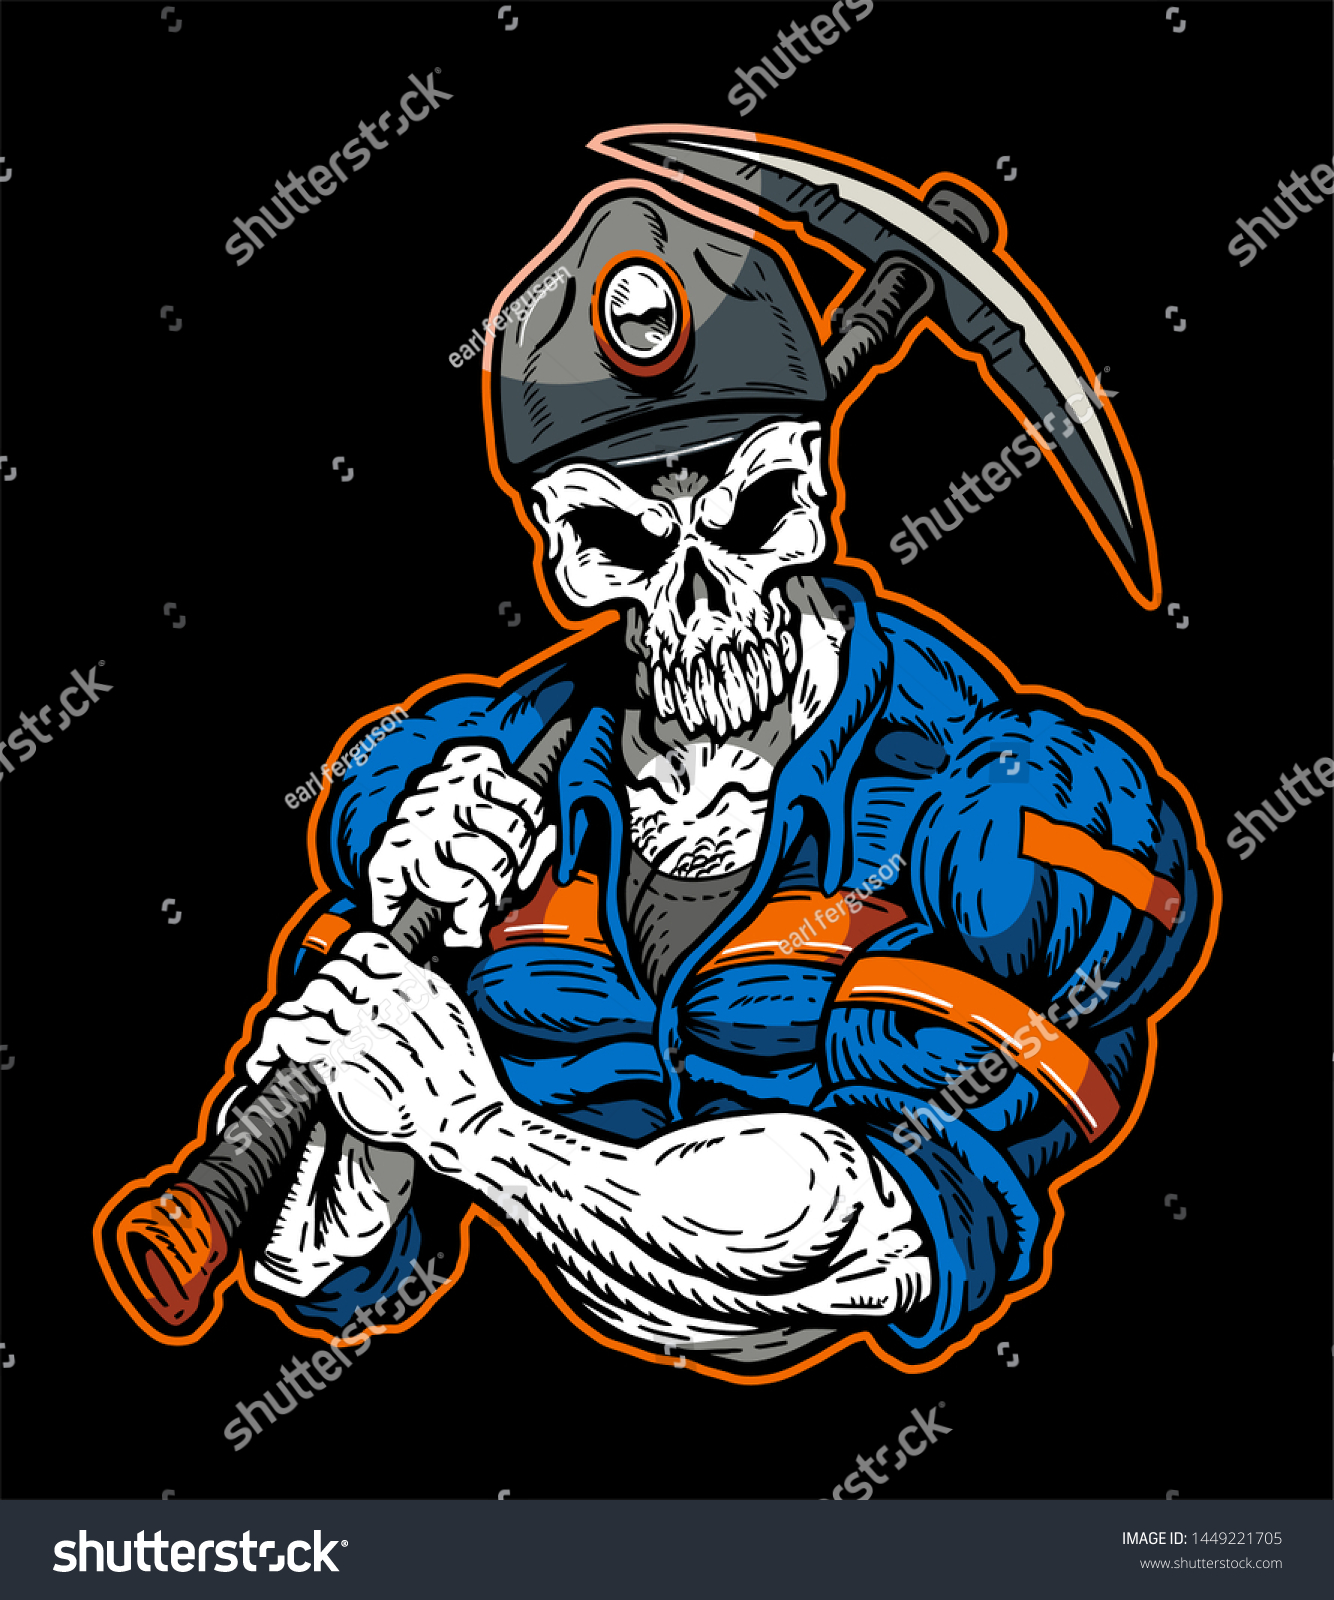 Muscular Grim Reaper Coal Miner Mascot Stock Vector (Royalty Free ...